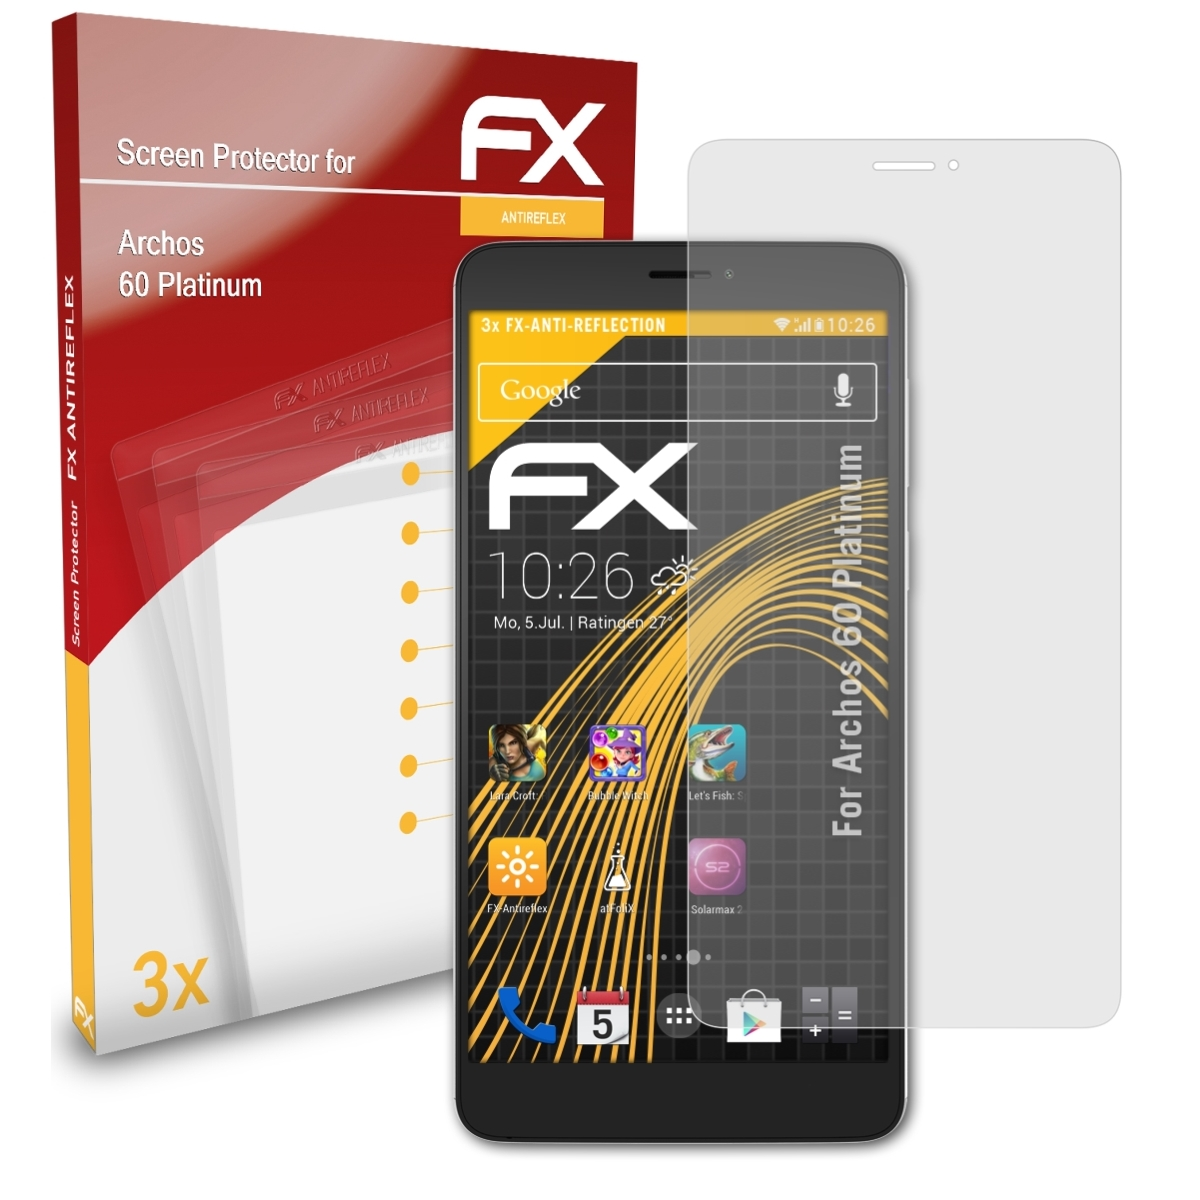 FX-Antireflex Platinum) 3x Archos Displayschutz(für ATFOLIX 60